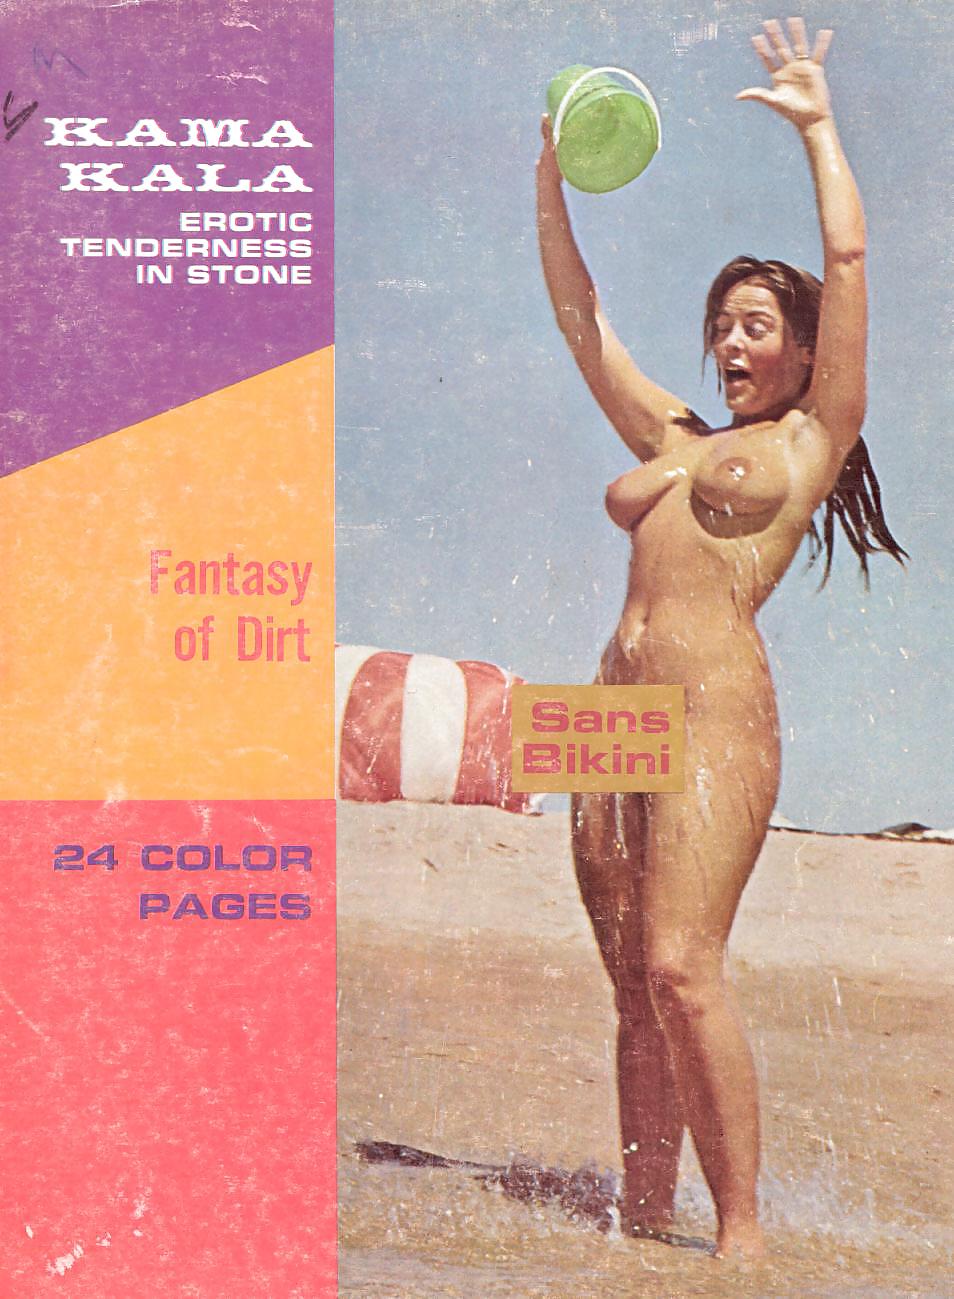 Nude living #21 - rivista nudista d'epoca
 #25812515